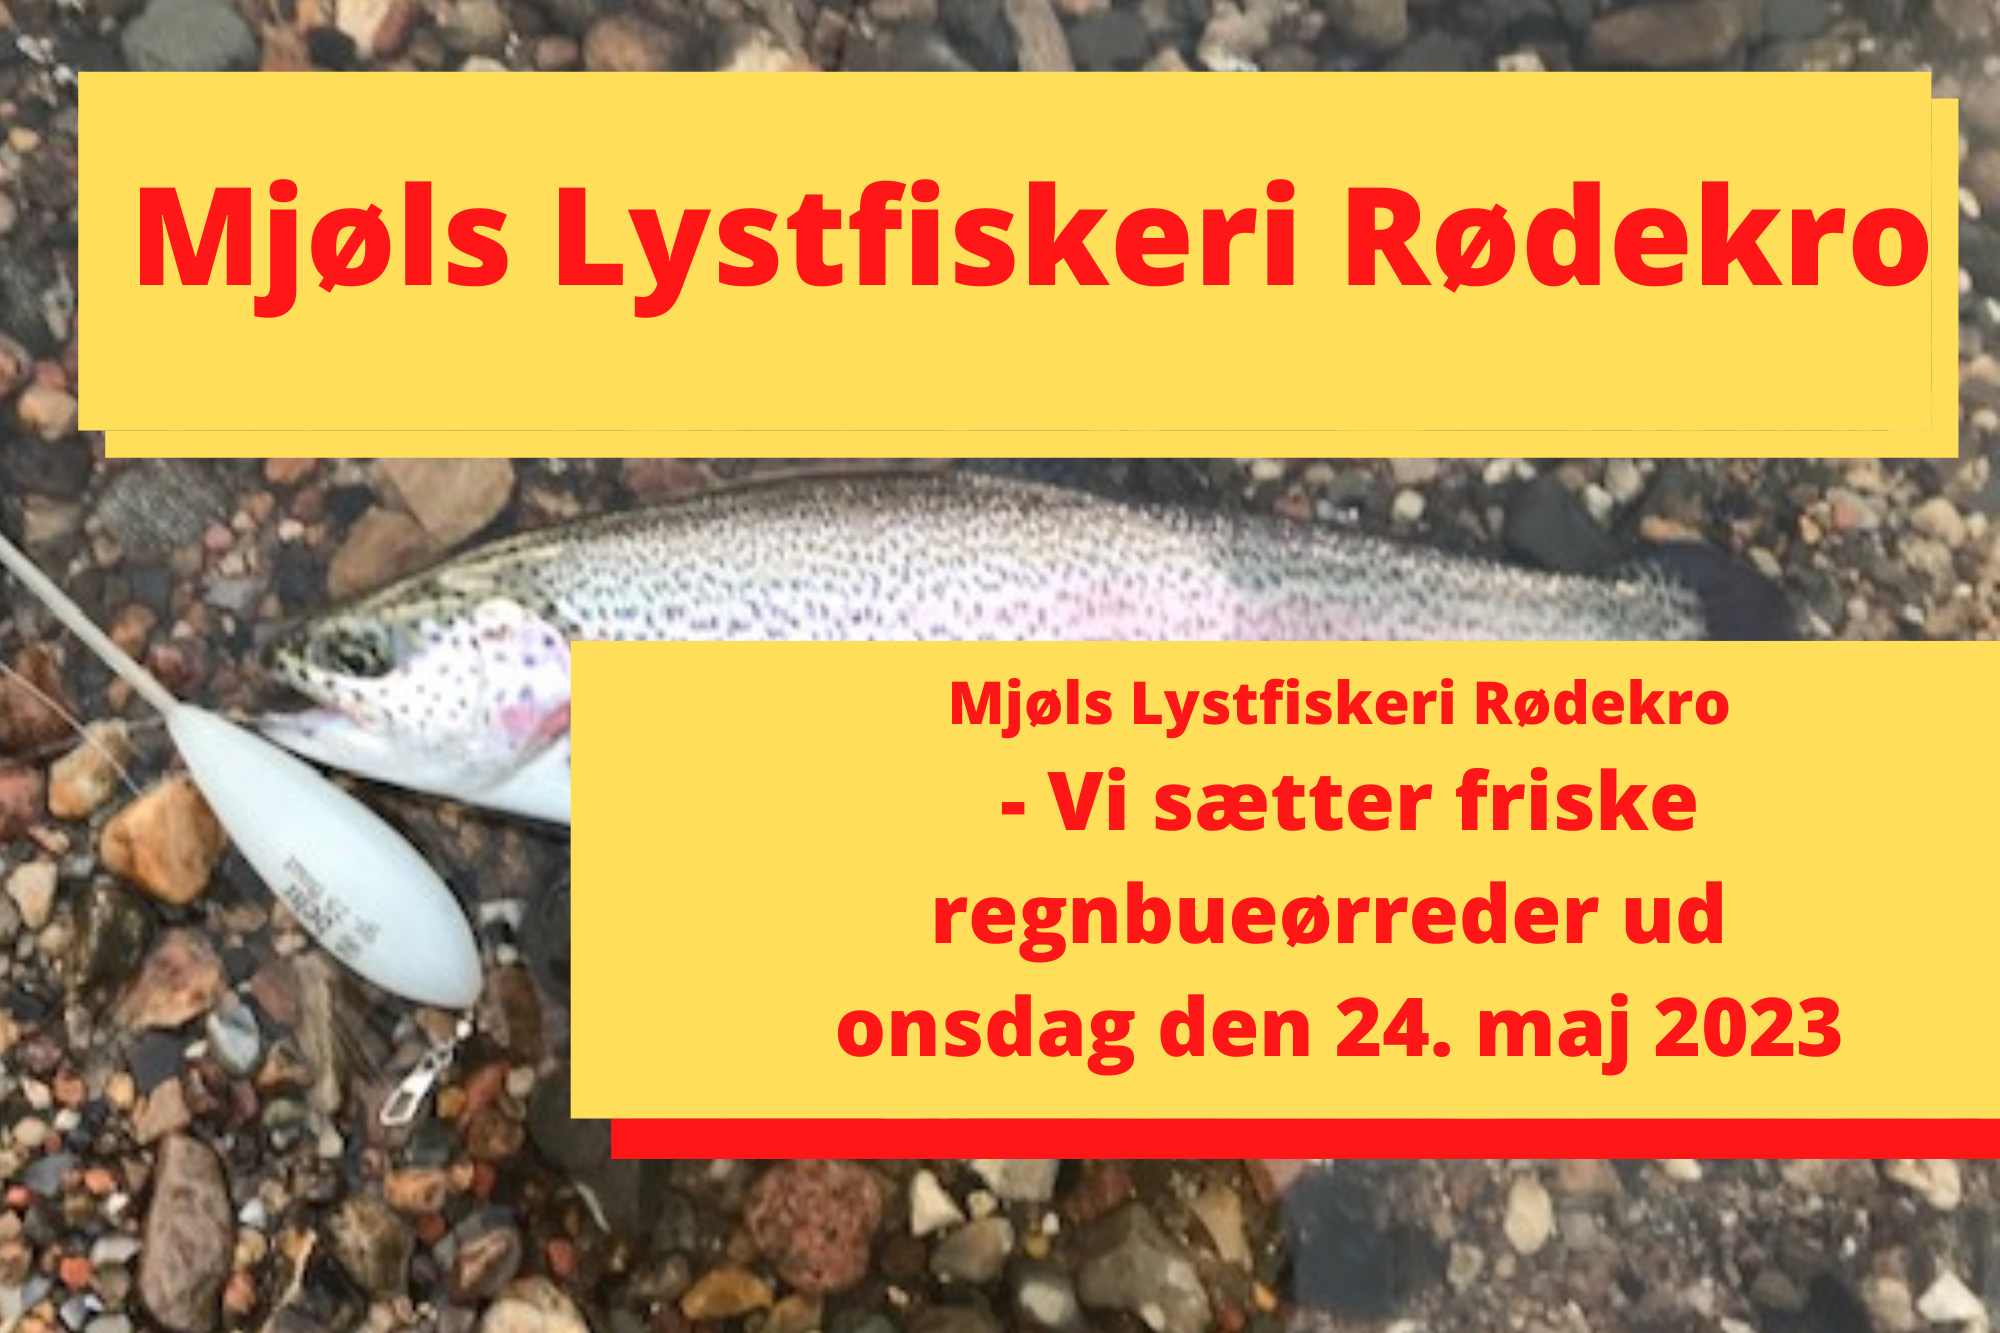 Mjøls Lystfiskeri: I morgen onsdag den 24. maj 2023 udsættes friske regnbueørreder i SØ1